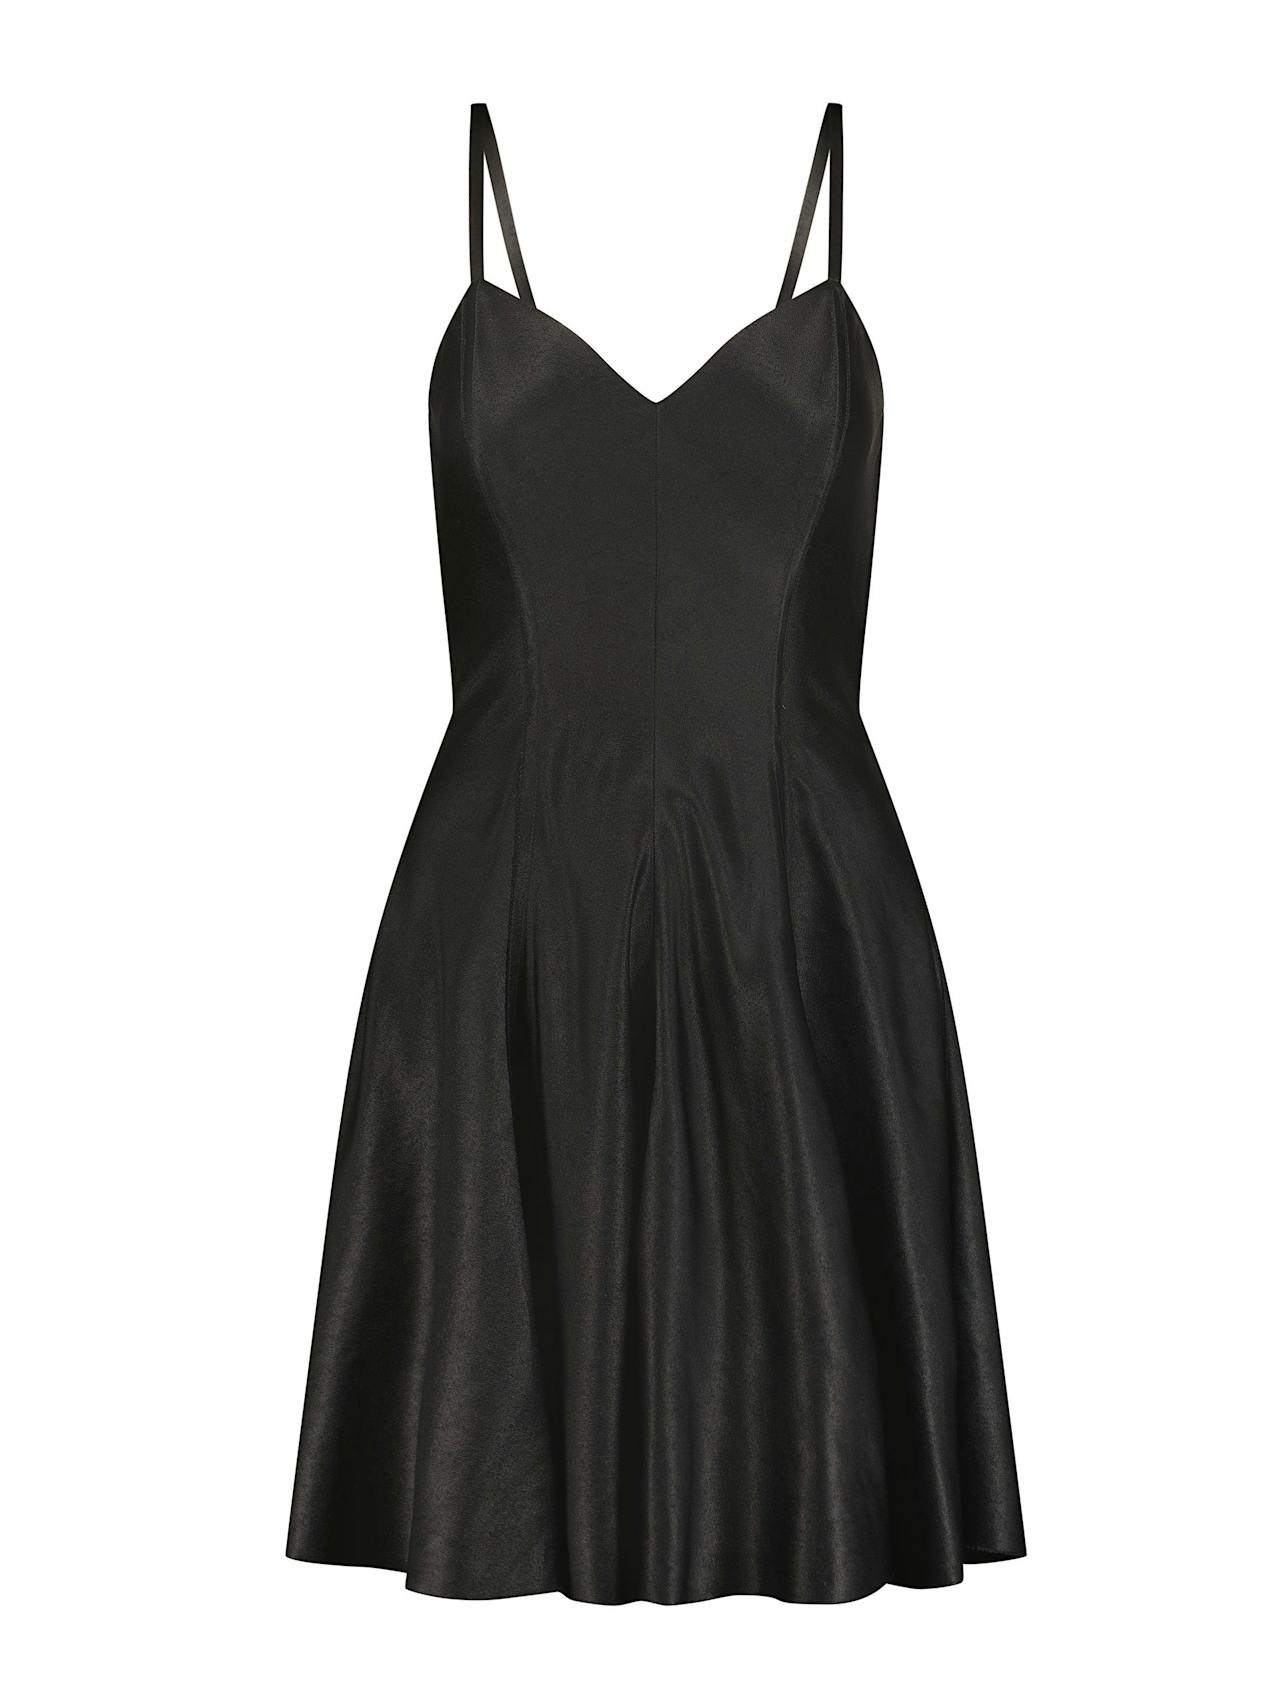 Black satin mini swing dress